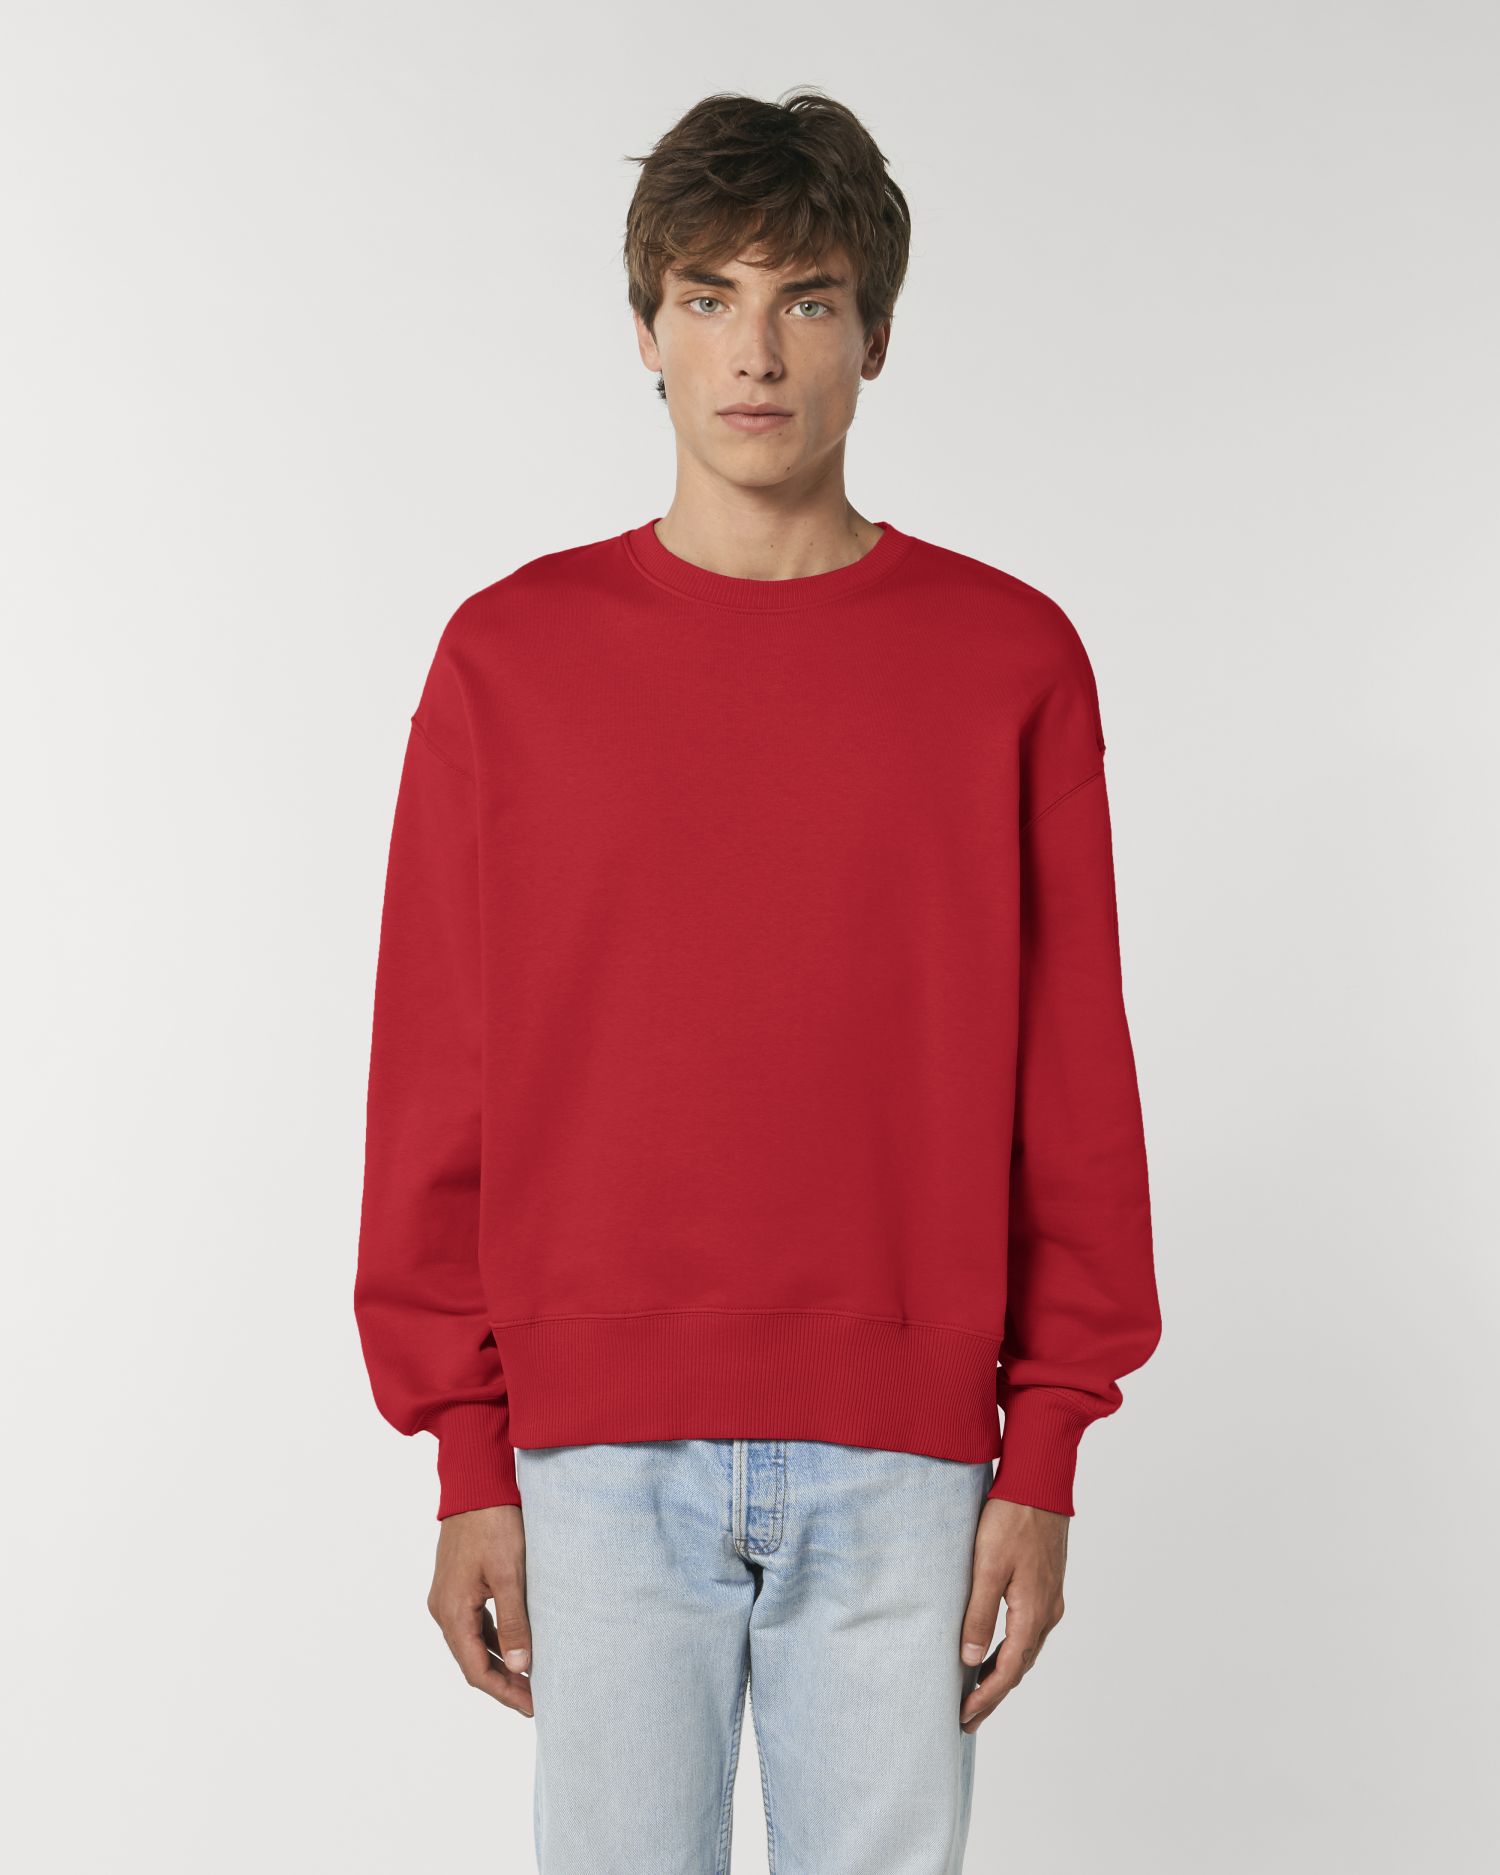 Crew neck sweatshirts Radder in Farbe Red